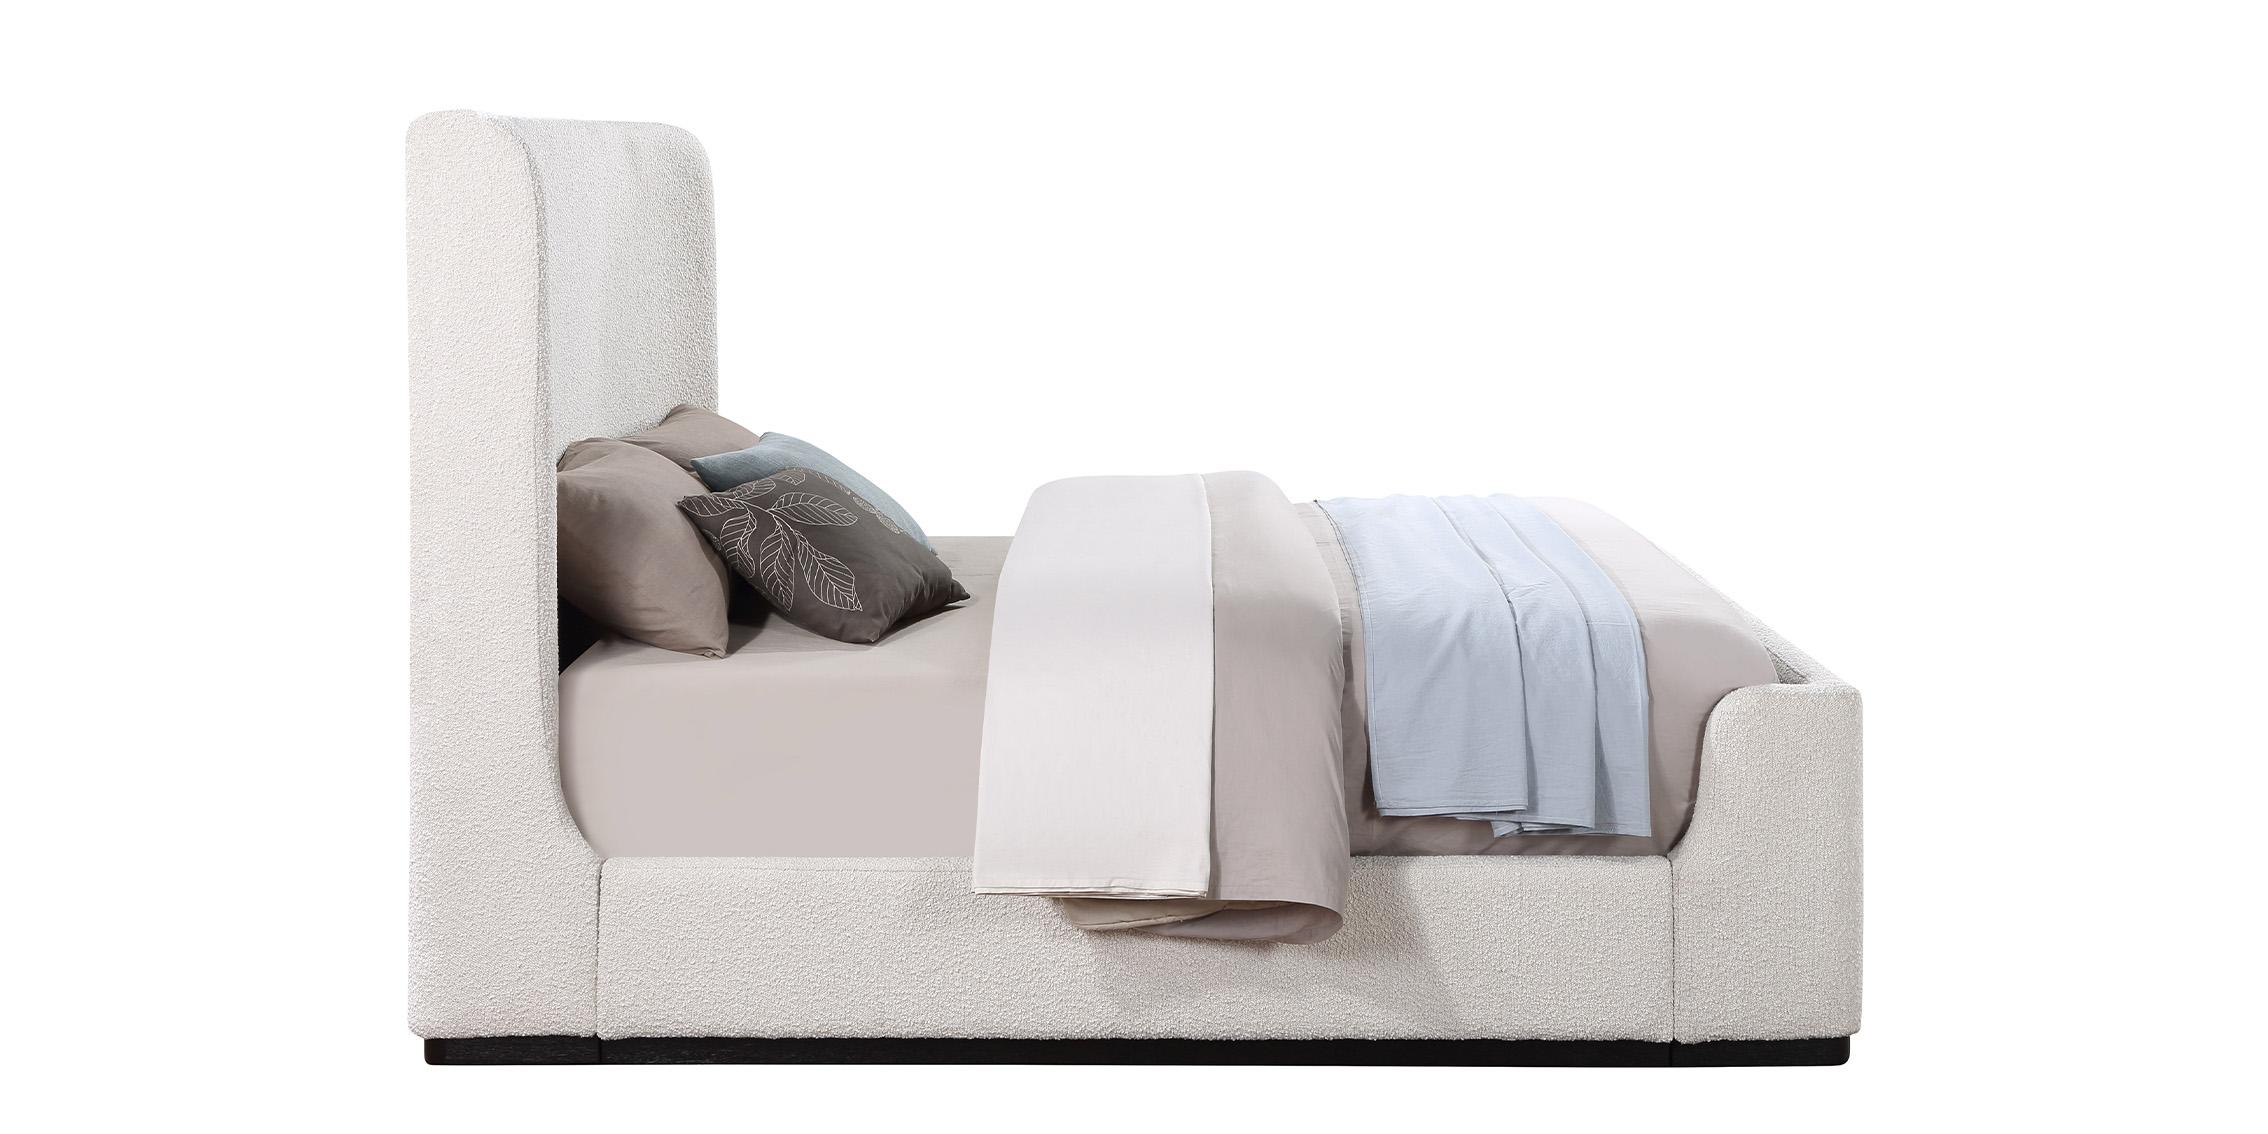 

    
OliverCream-K Meridian Furniture Platform Bed
